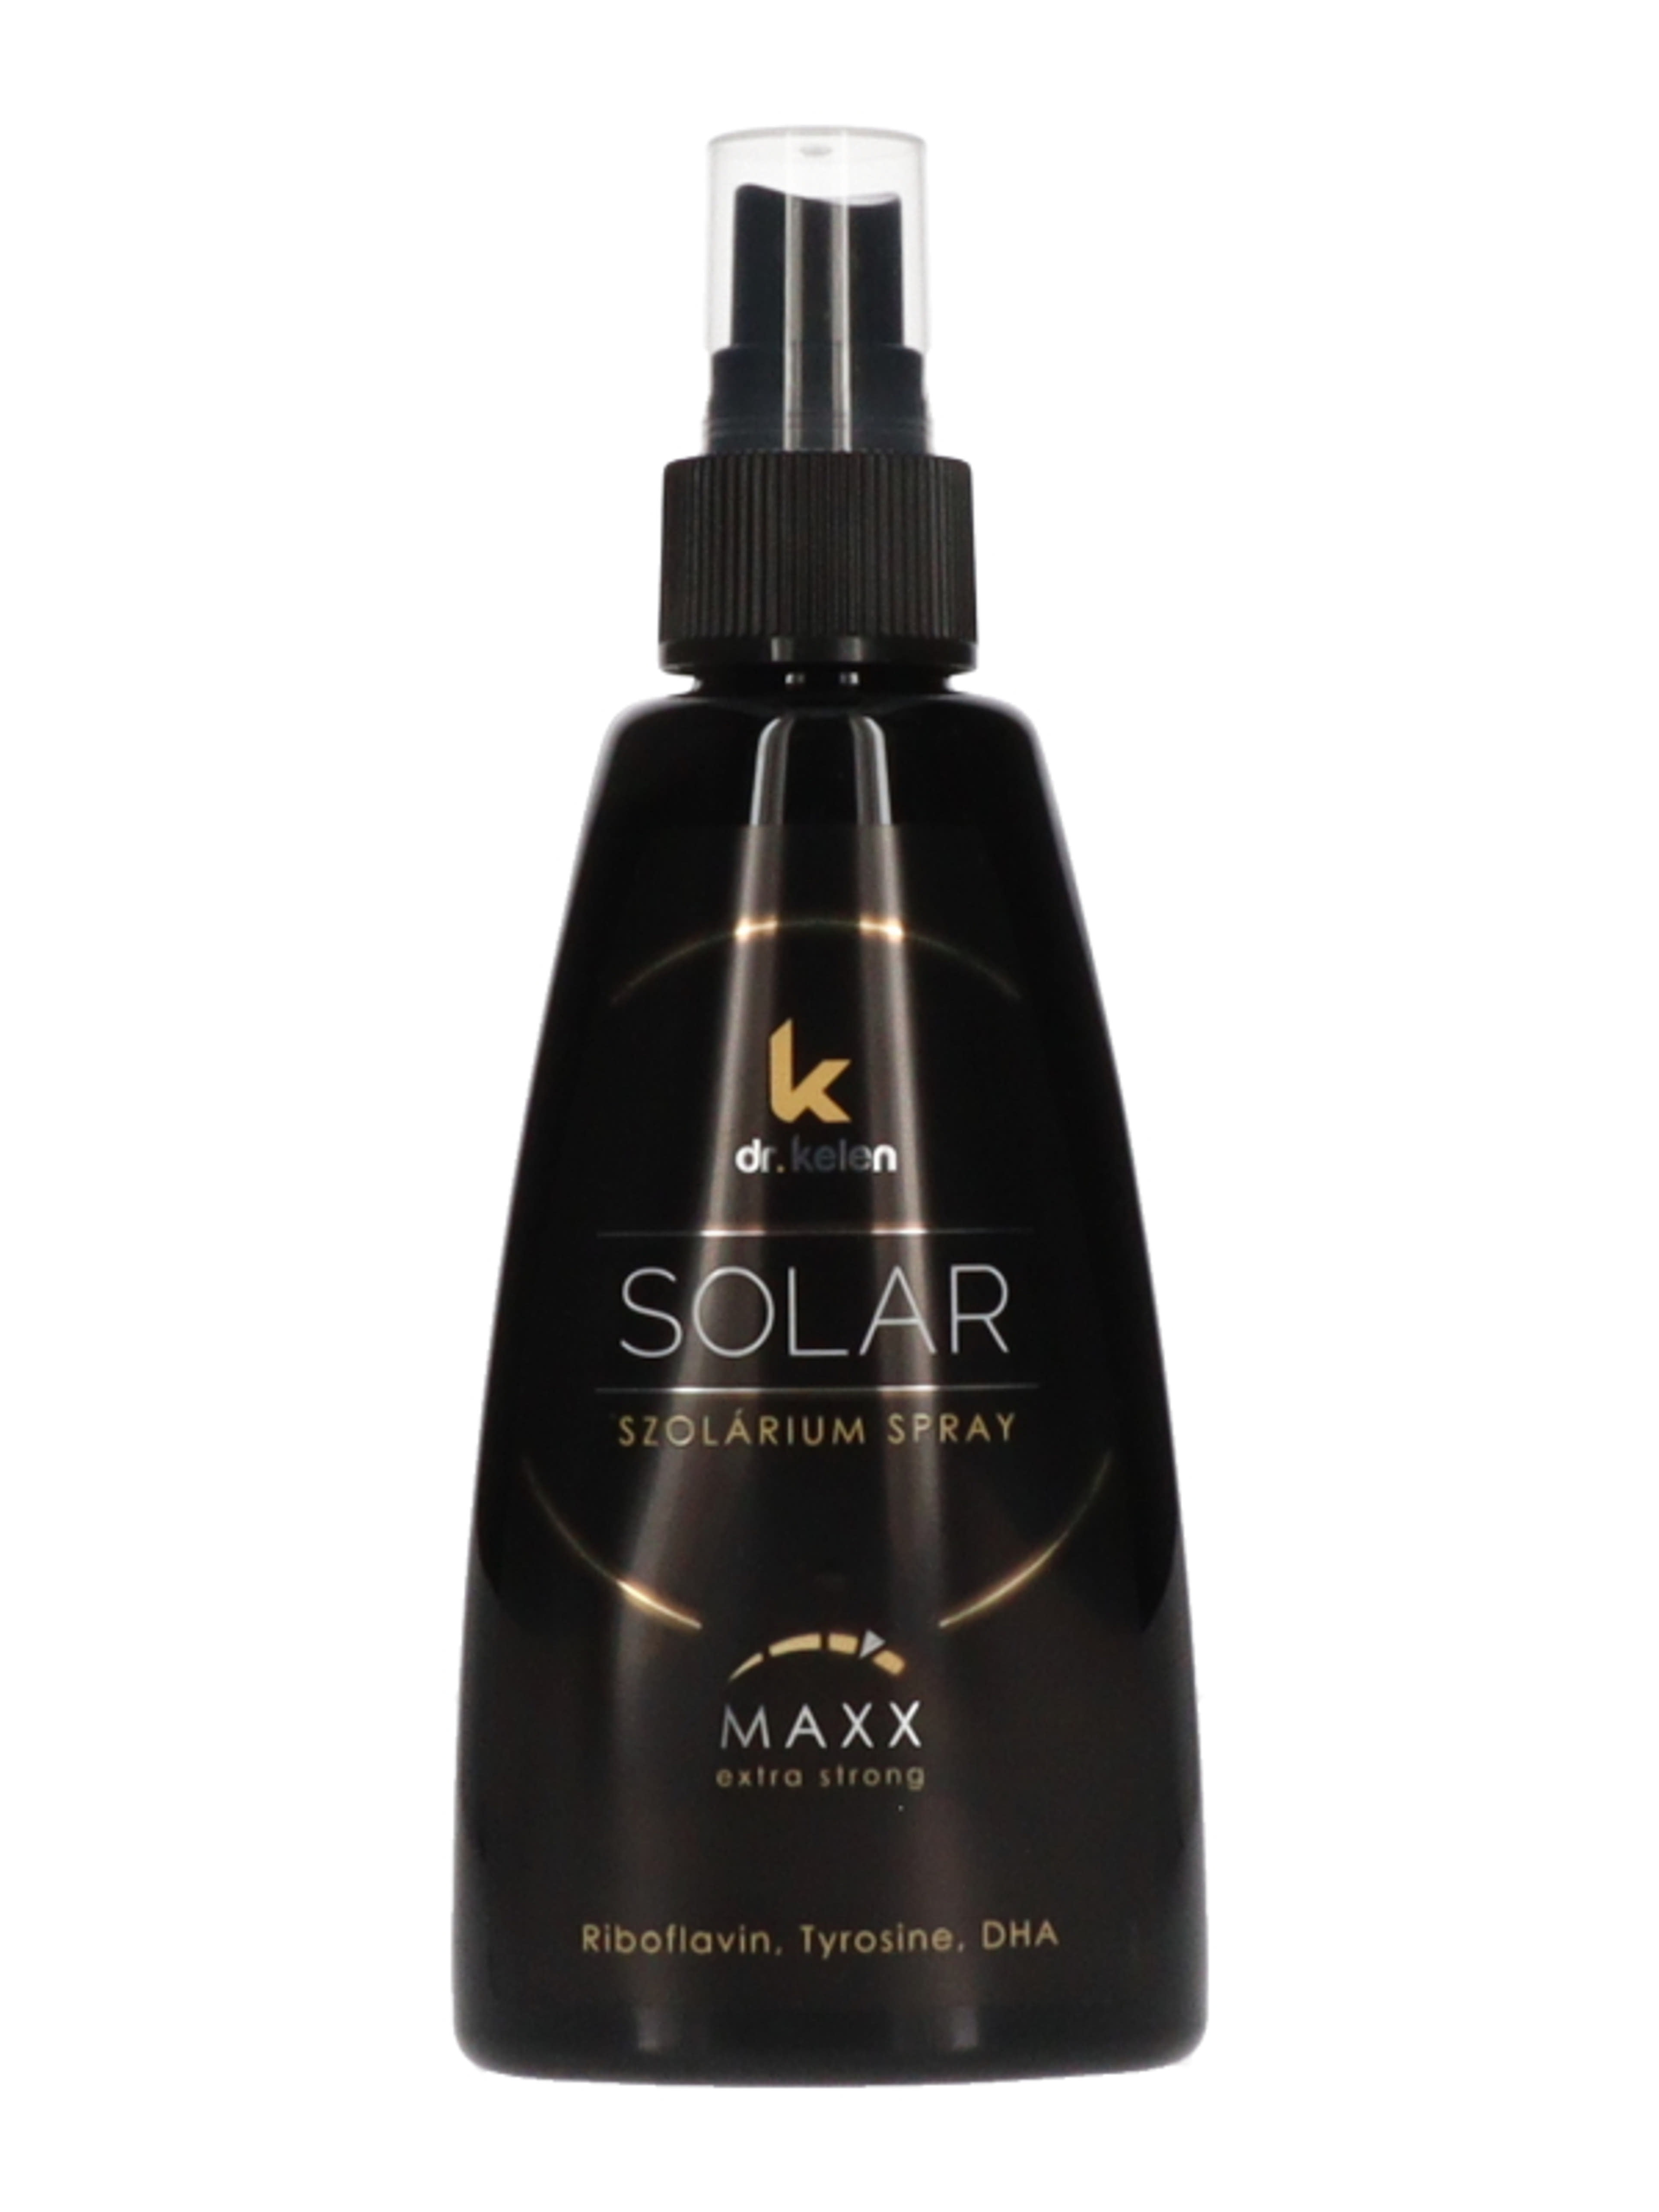 Dr. Kelen sunsolar maxx spray - 150 ml-3